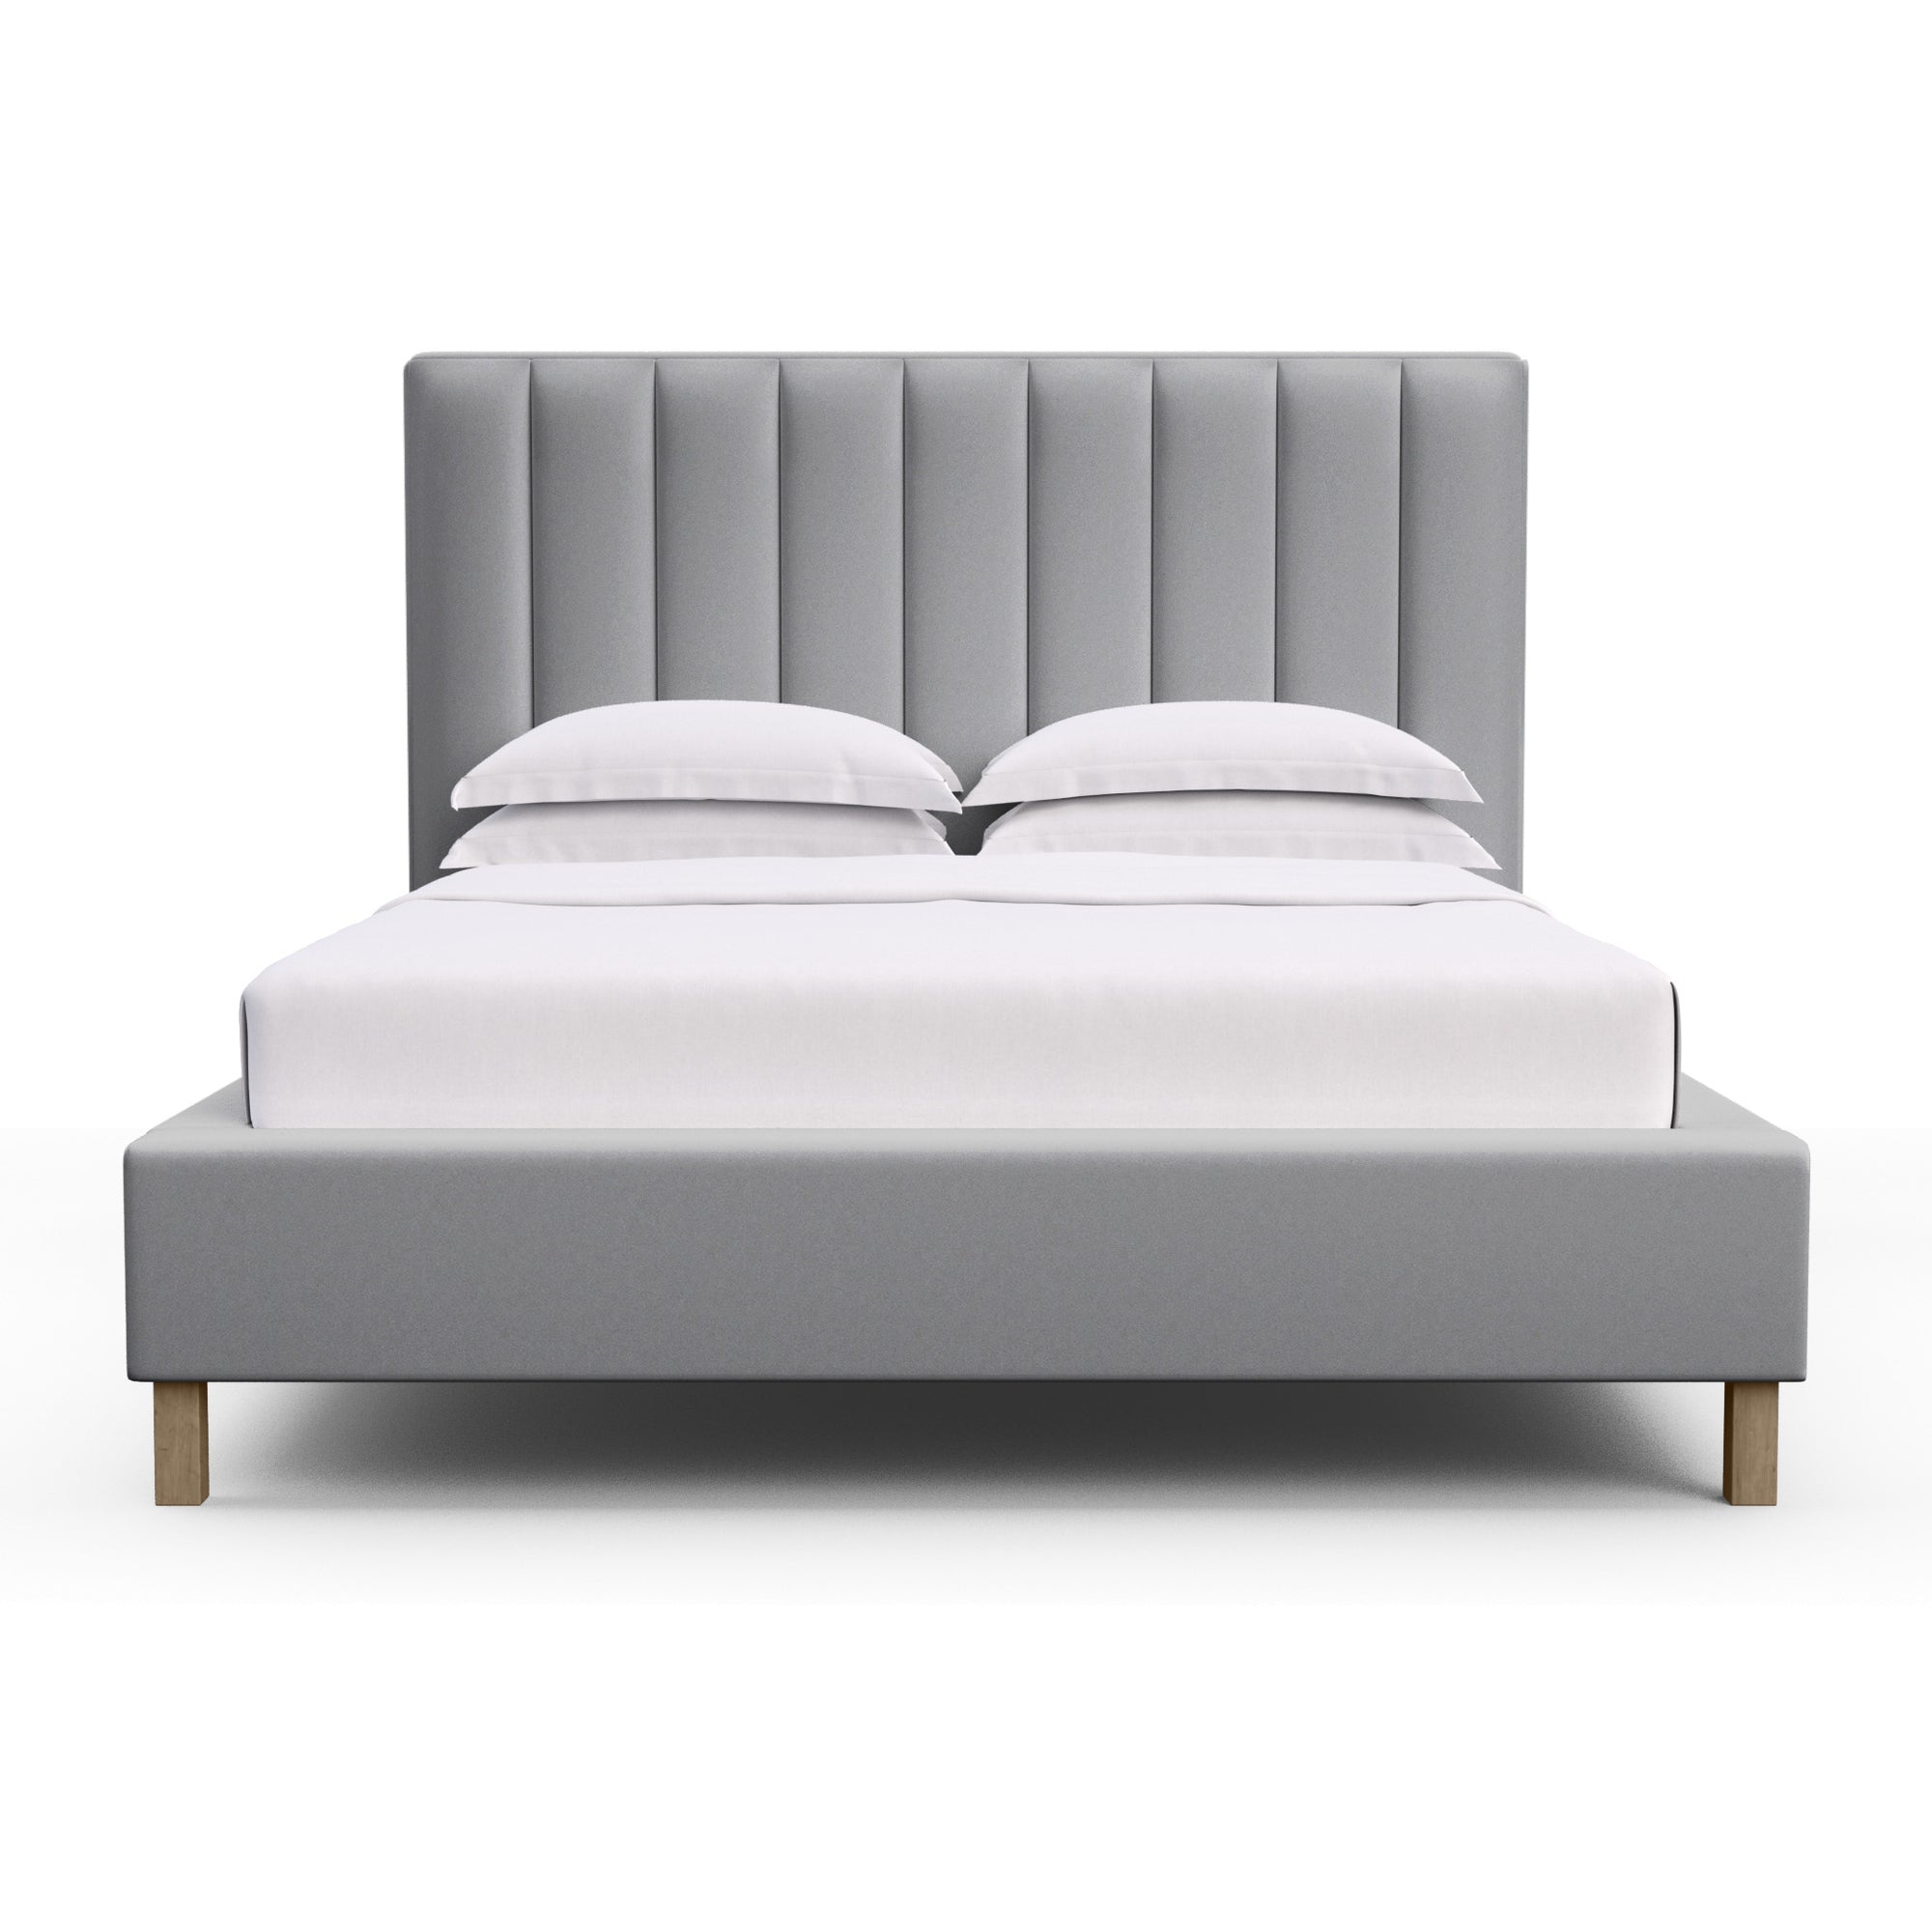 Highline Vertical Channel Panel Bed - Pumice Plush Velvet